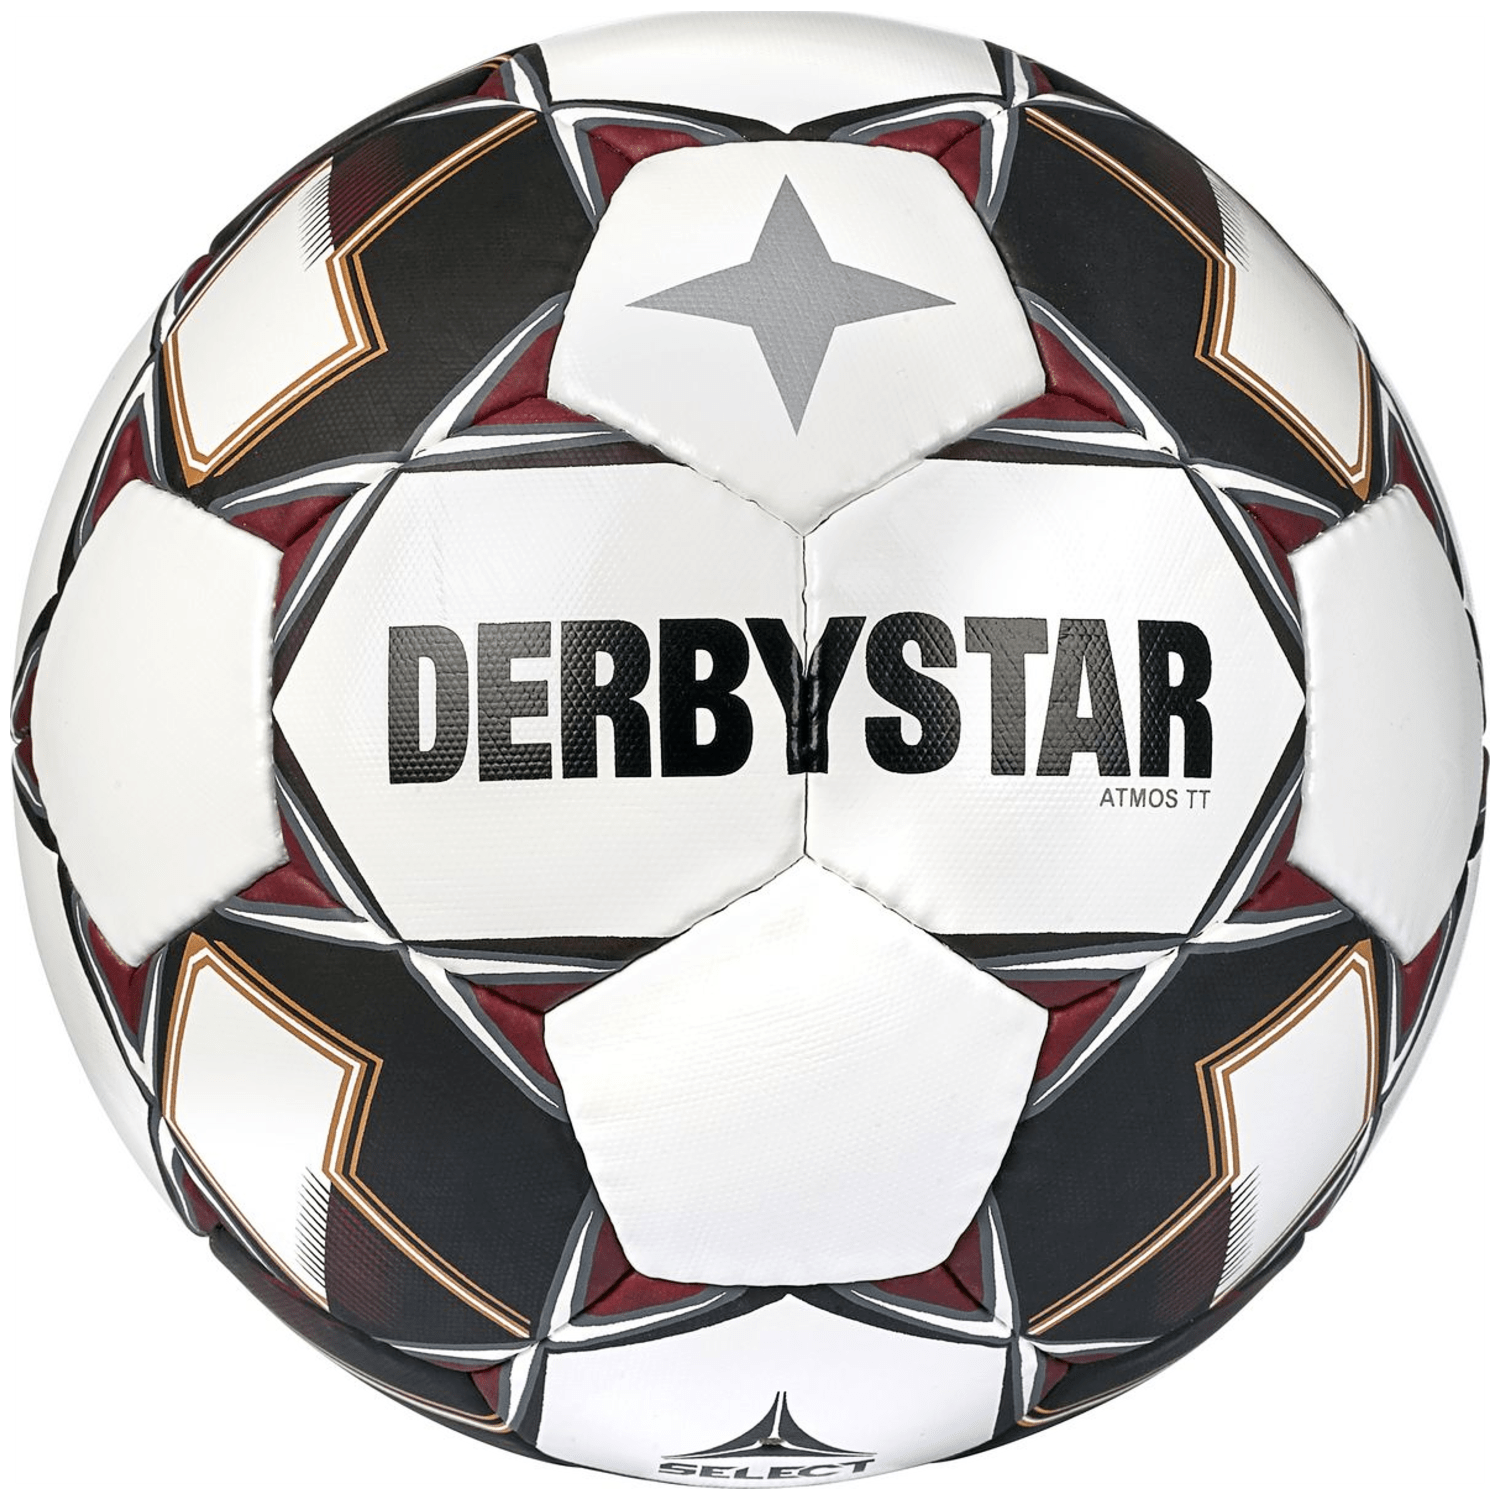 Derbystar Atmos TT v22 Outdoor-Fußball